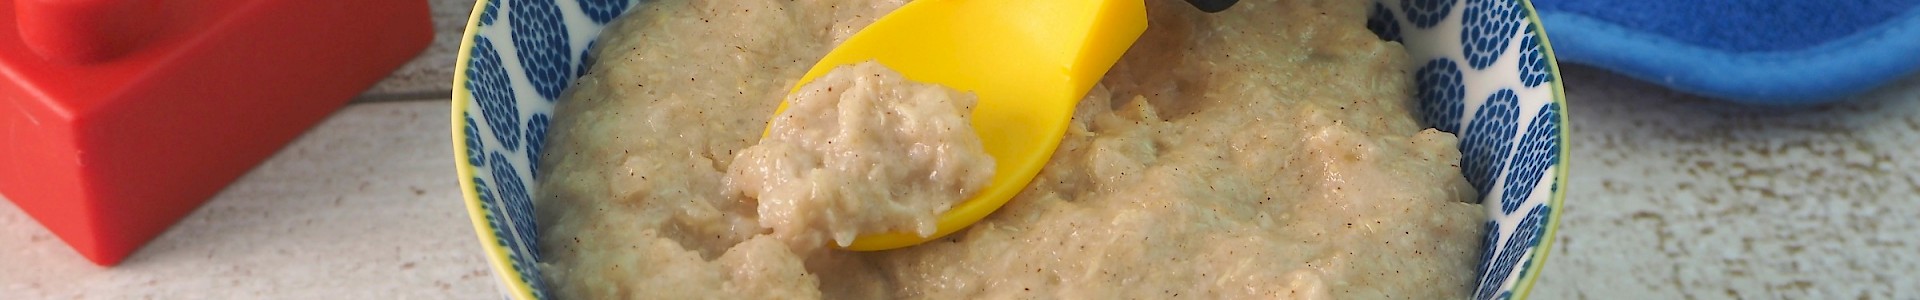 Pear and Quinoa Porridge